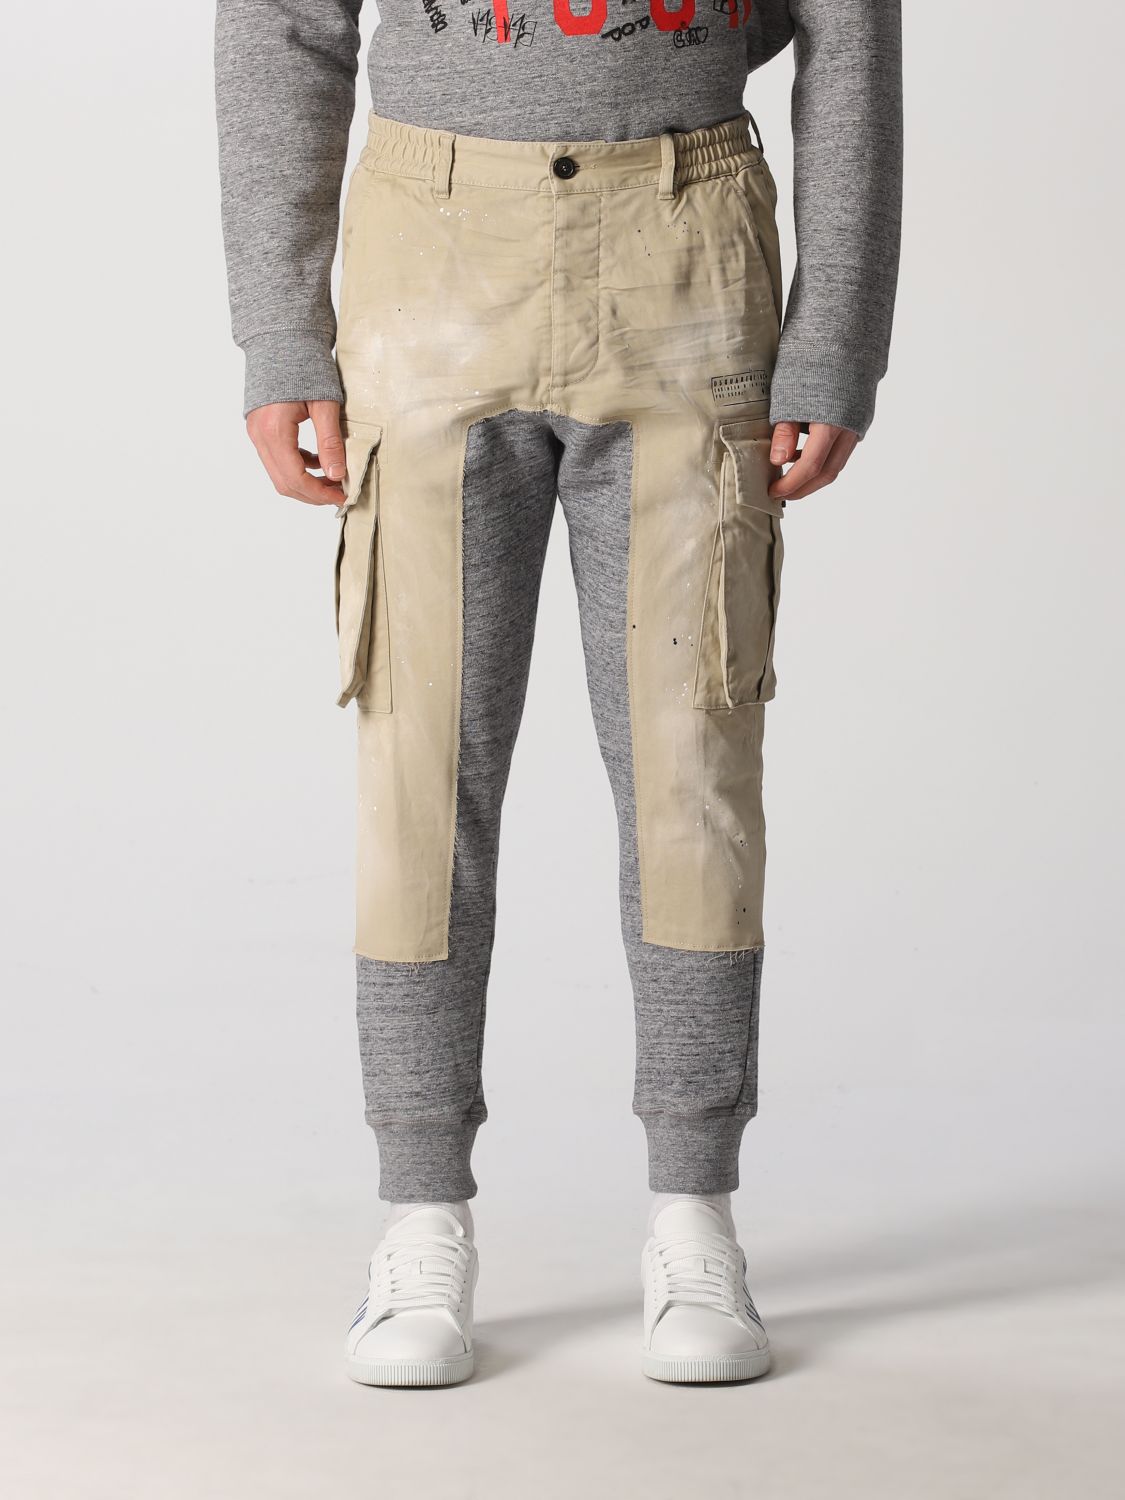 Pantalone in cotone stretch con logo ricamato Giglio.com Abbigliamento Pantaloni e jeans Pantaloni Pantaloni stretch 